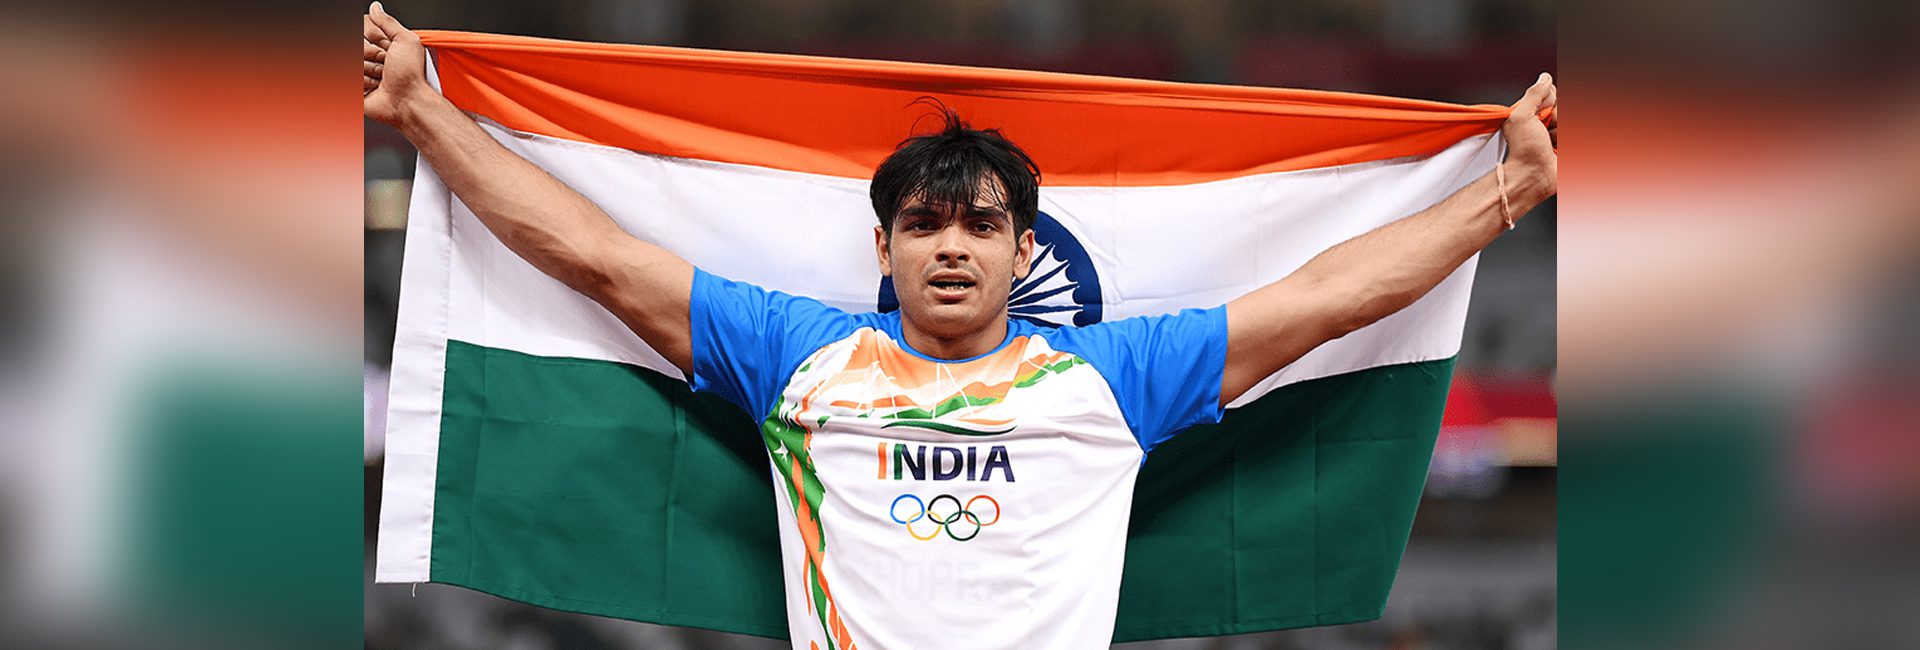 Neeraj Chopra người Ấn Độ toàn cầu: Nhà đương kim vô địch Olympic người đã khiến Ấn Độ tự hào với huy chương vàng